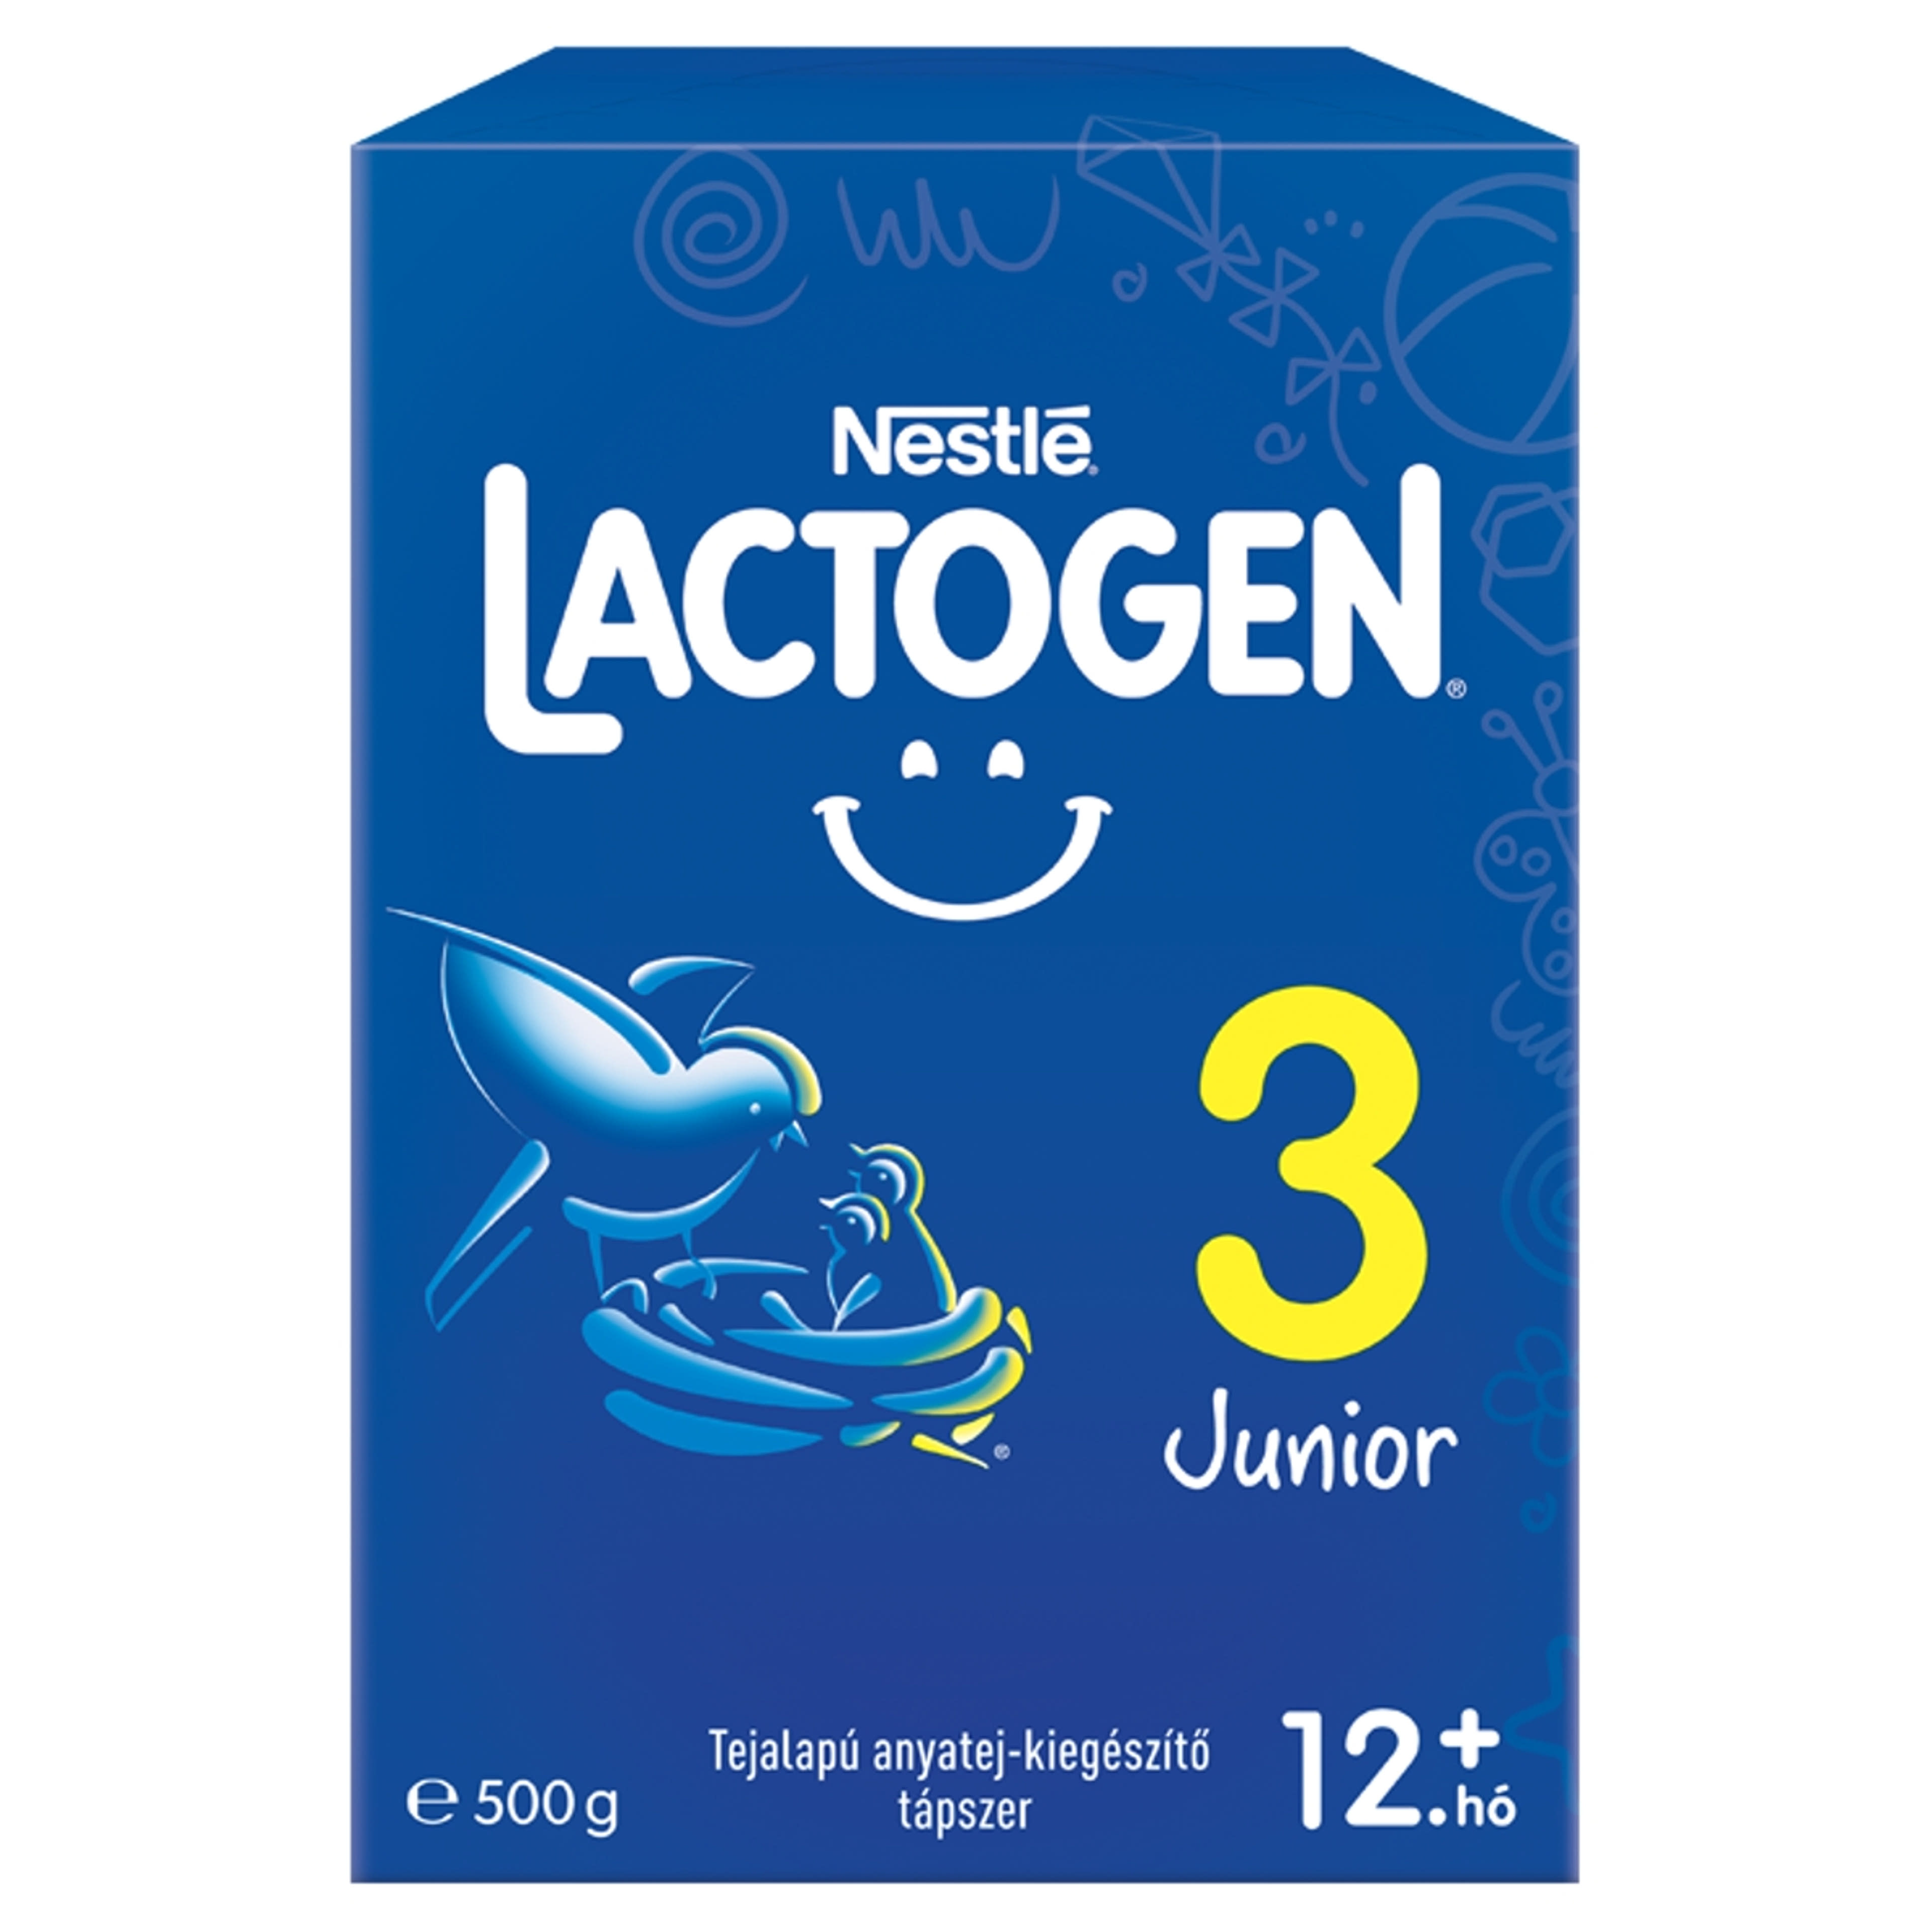 Nestlé Lactogen 3 Junior tápszer 12 hónapos kortól - 500 g